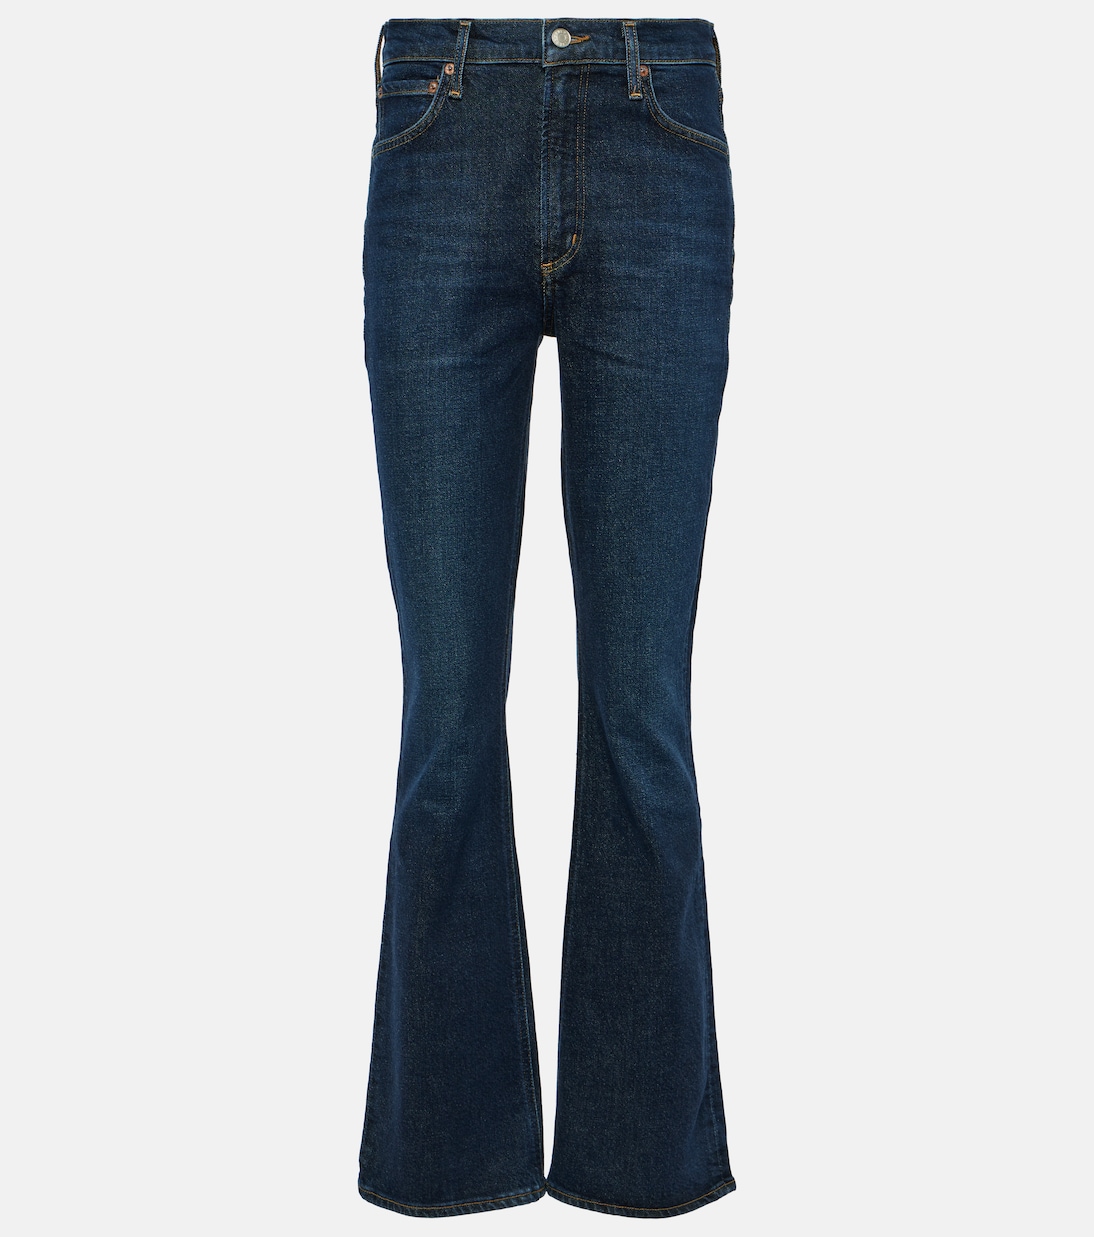 Узкие джинсы nico boot с высокой посадкой Agolde, синий